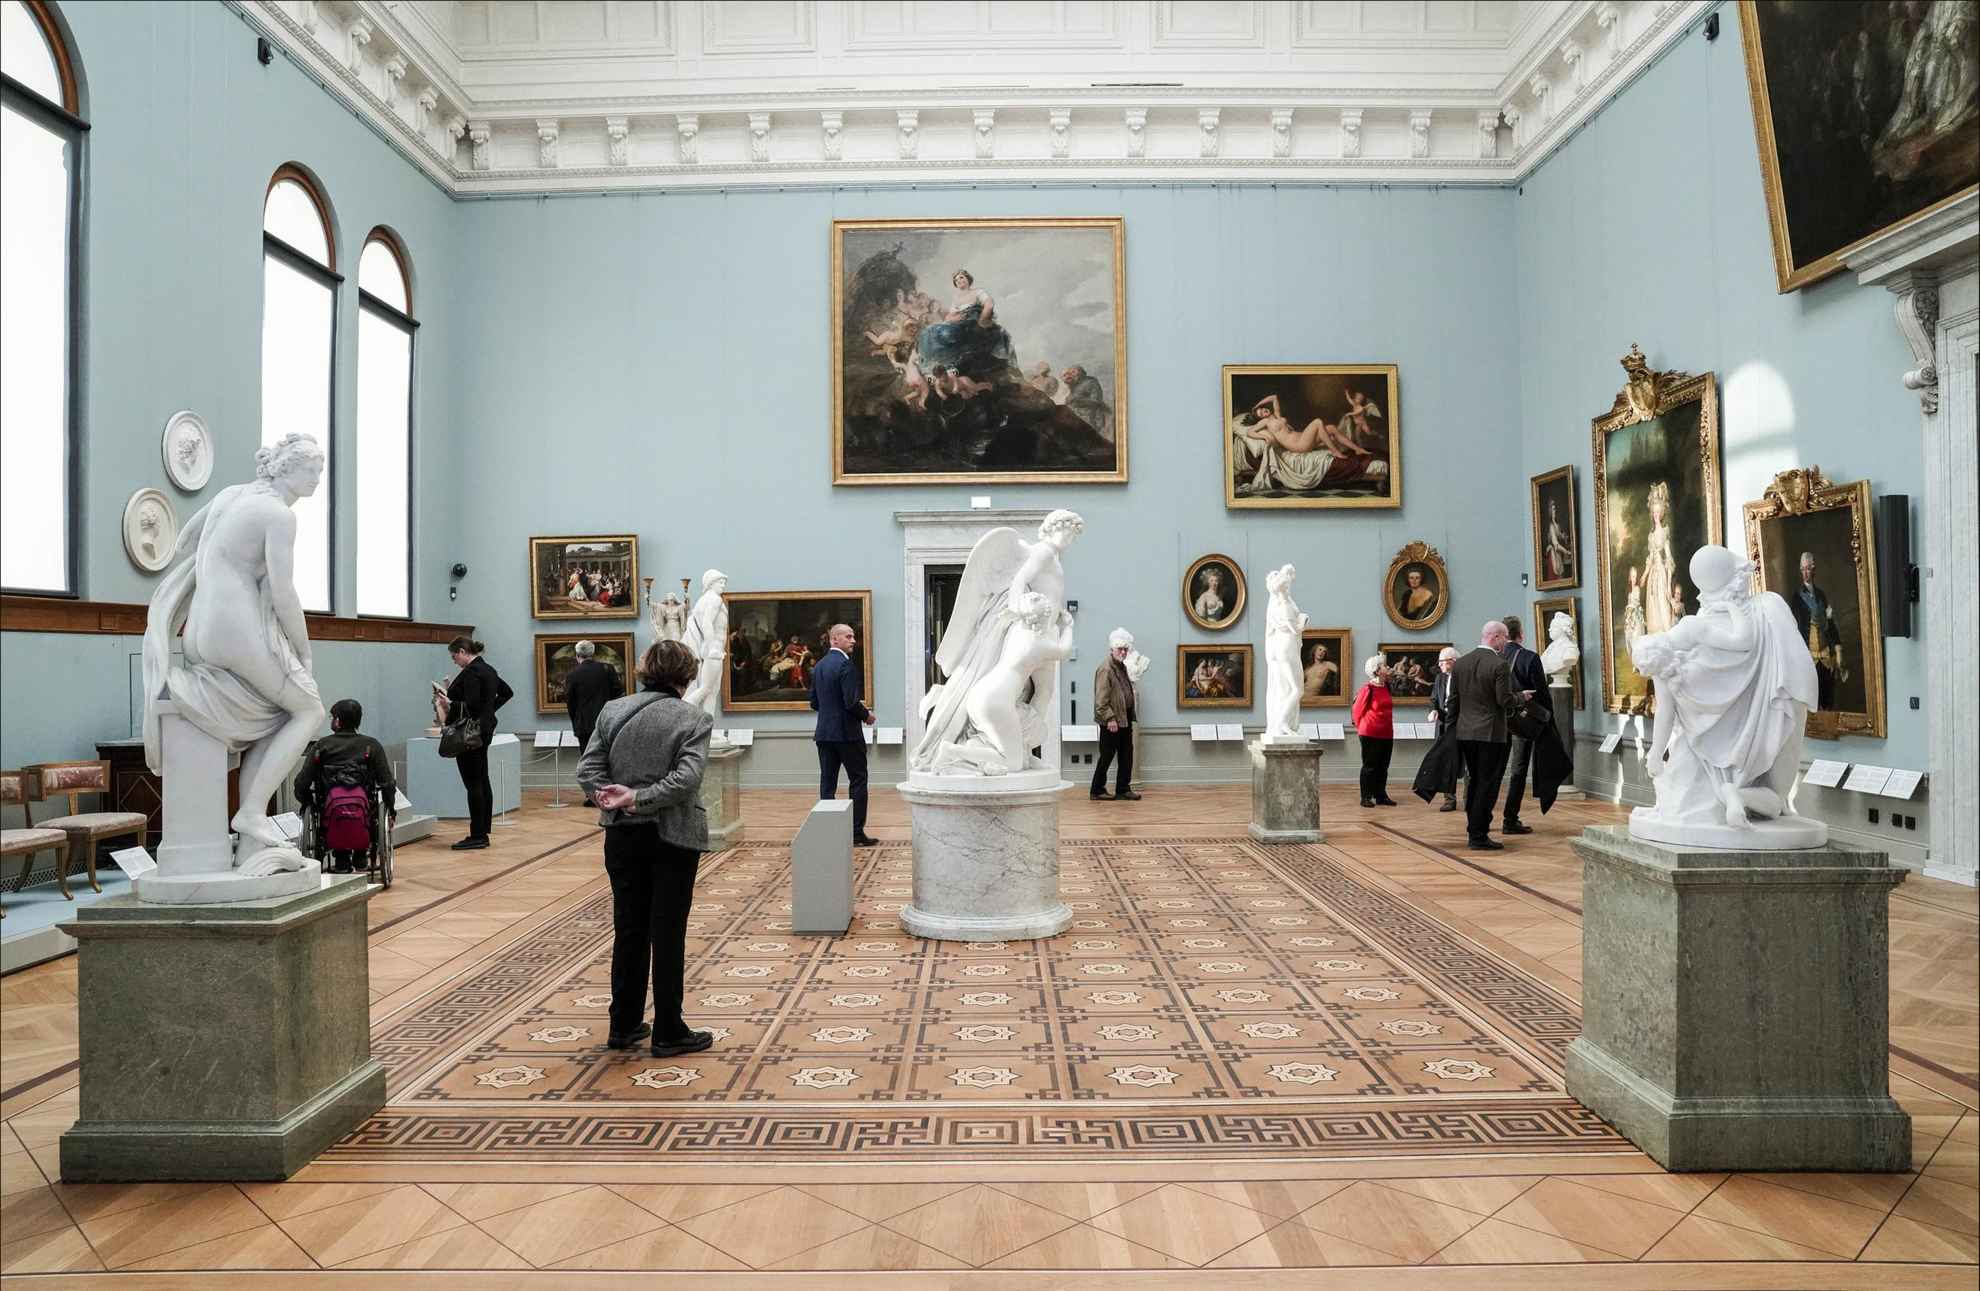 Menschen gehen in einem großen Raum mit Gemälden und Skulpturen herum.